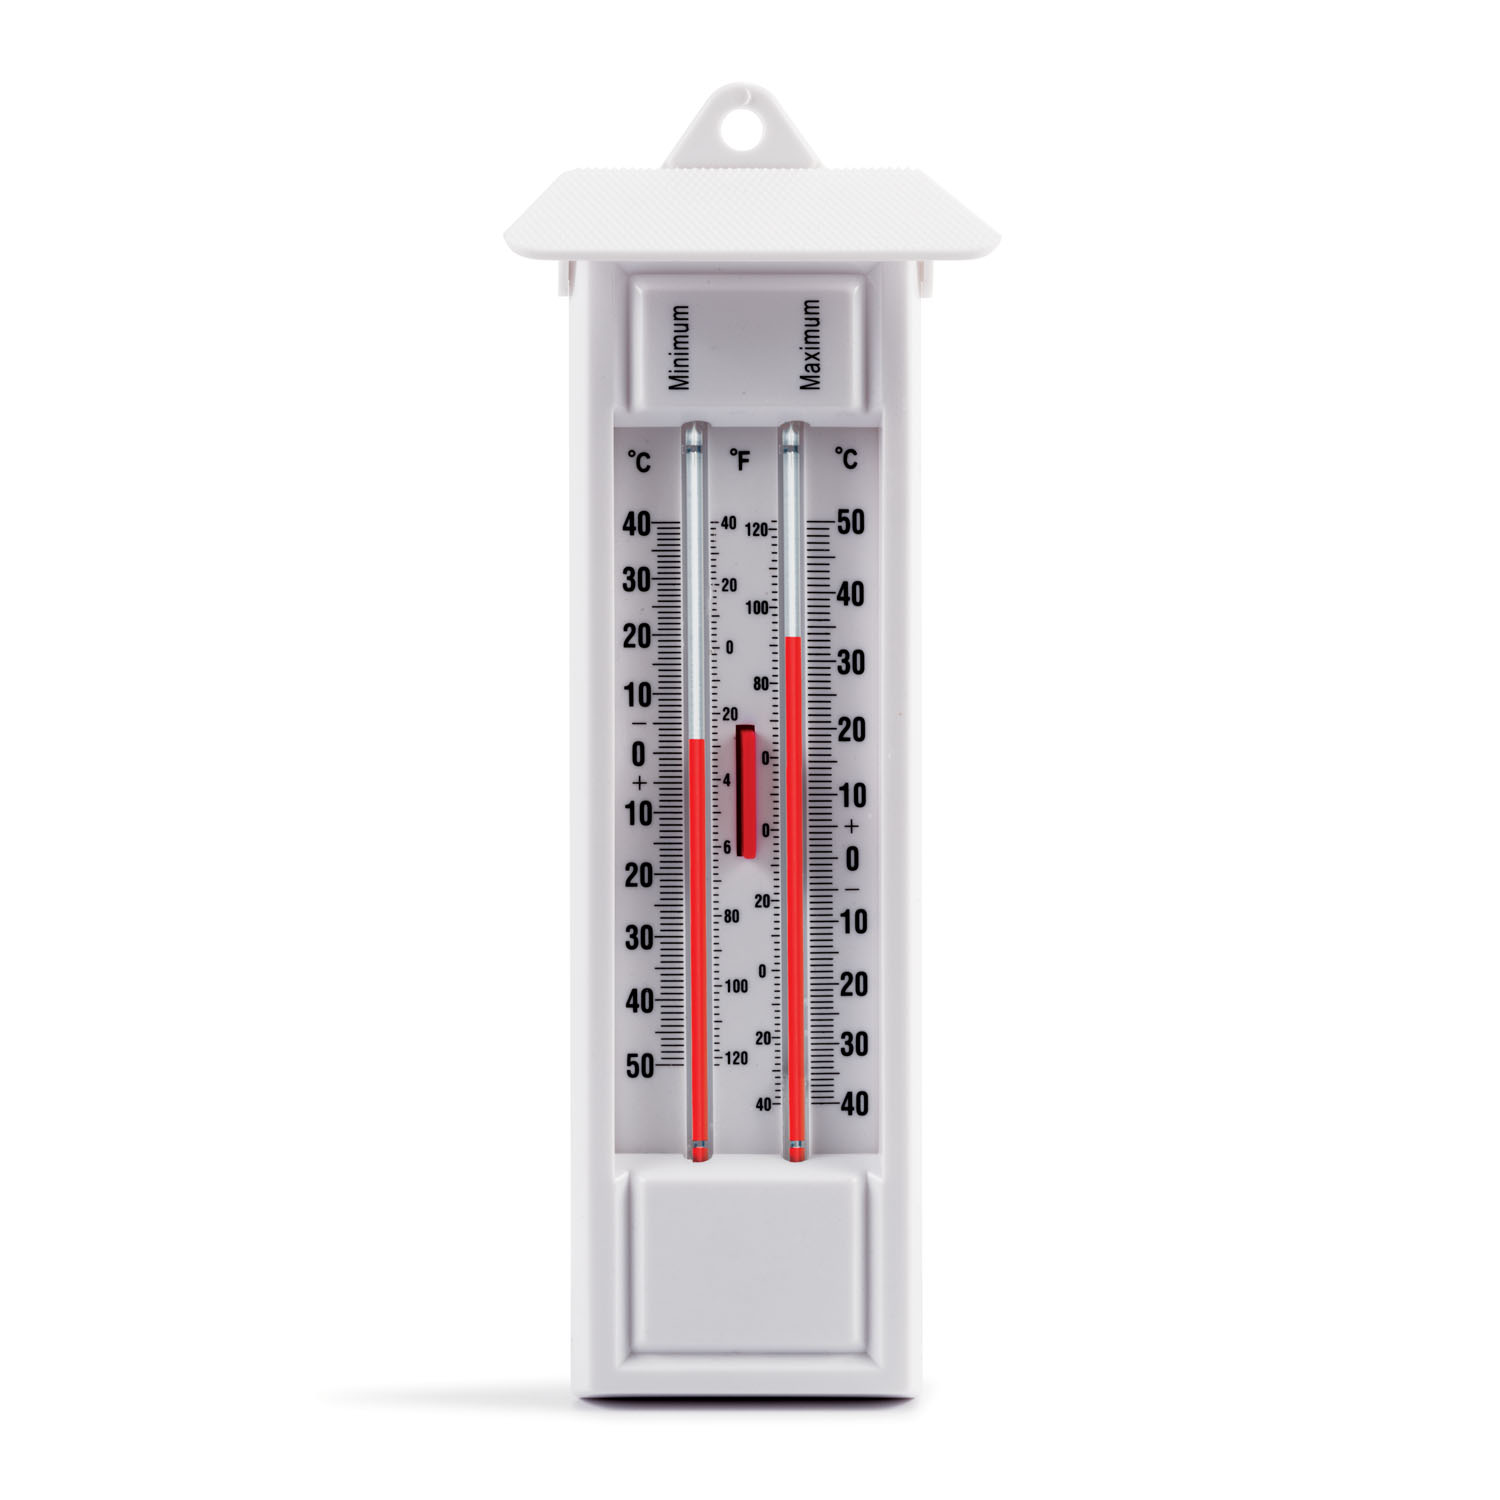 Min/Max Thermometer